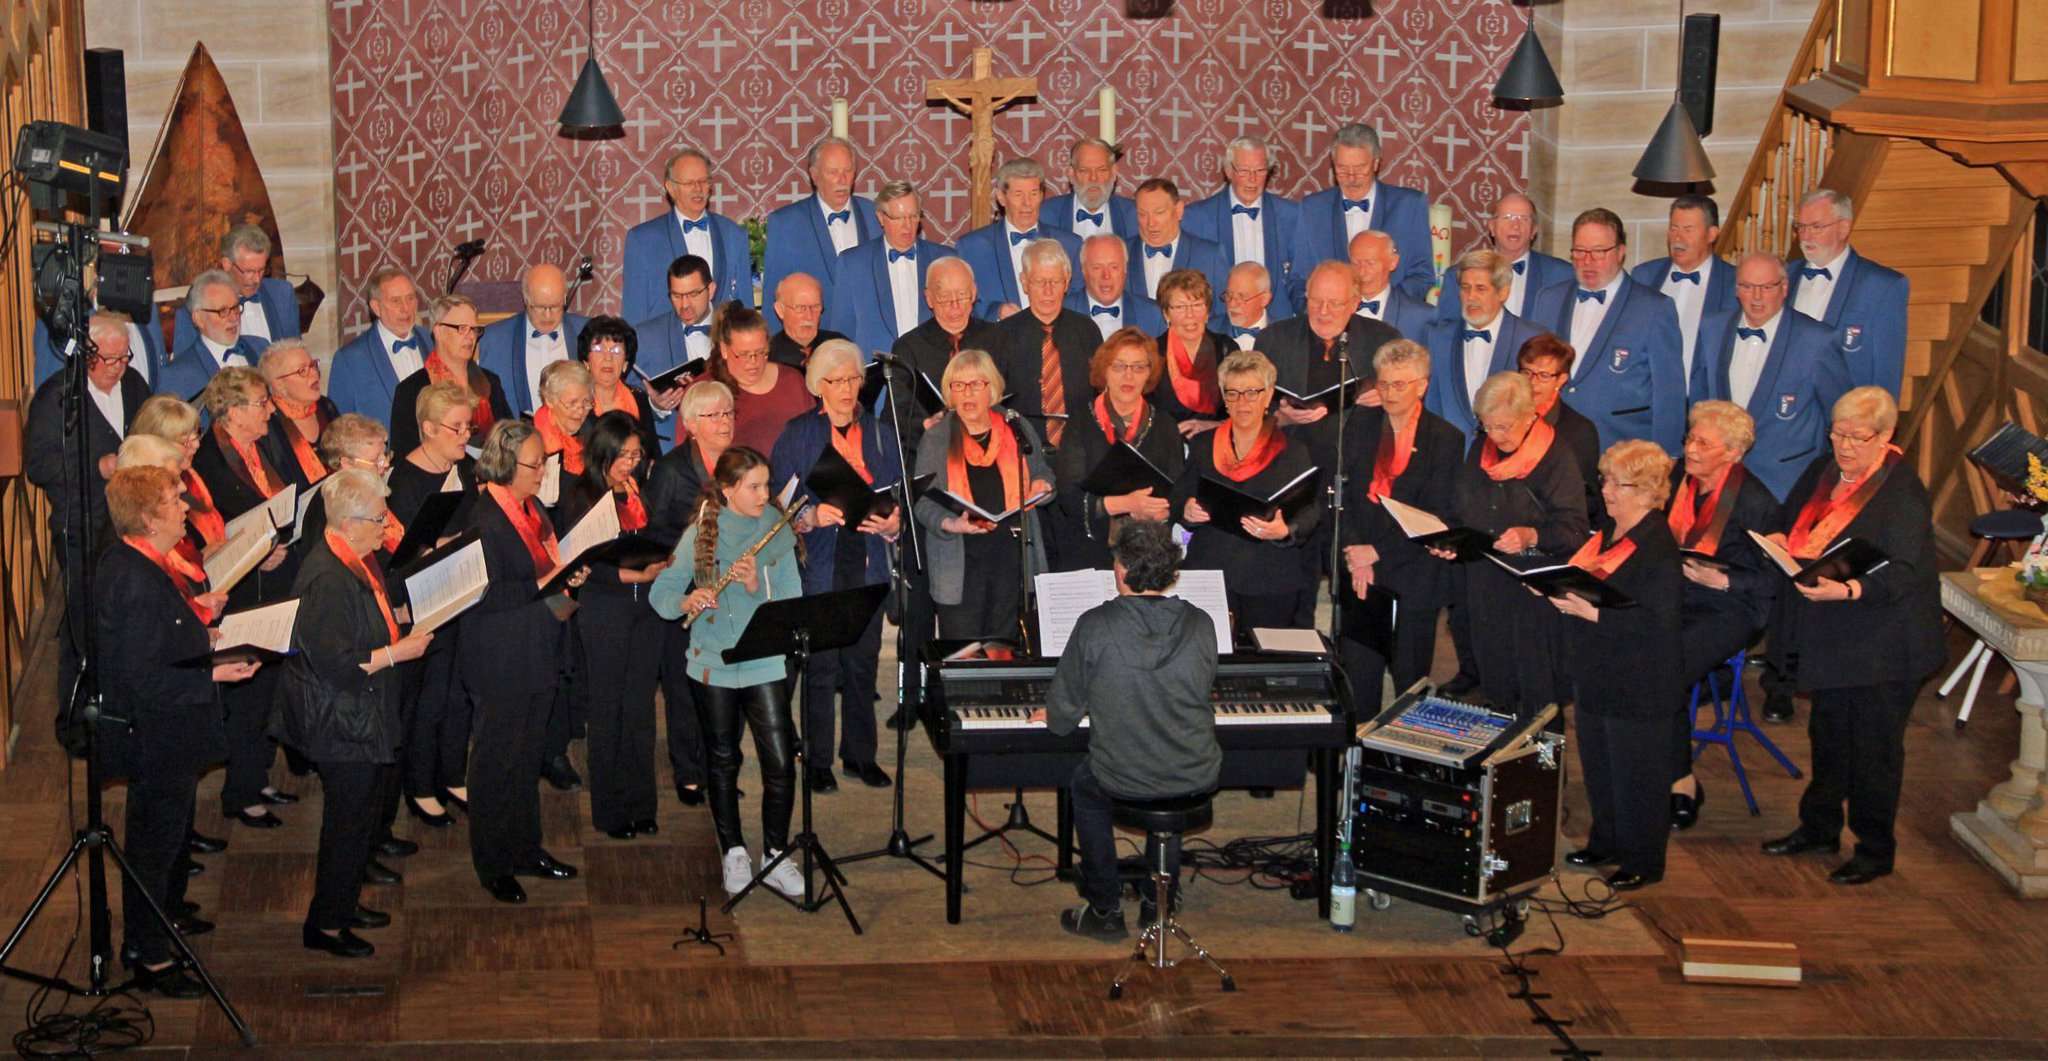 Die Oytener Liederfreunde und der Bremer Polizeichor gaben ein gemeinsames Konzert in der St. Petri Kirche in Oyten.